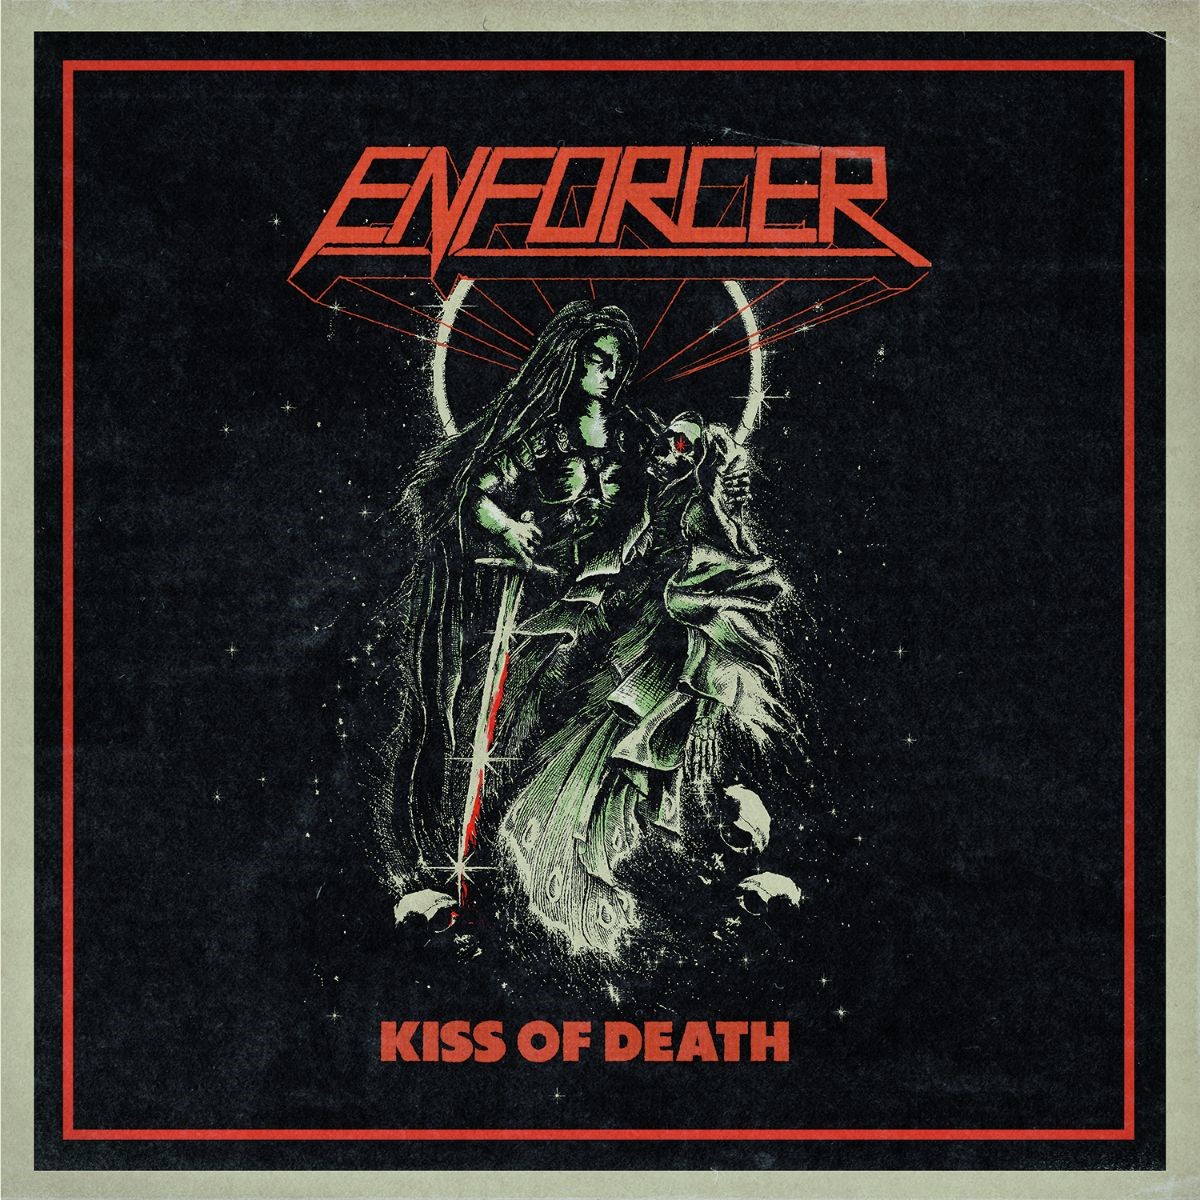 ENFORCER veröffentlichen mit "Kiss Of Death" die erste Single ihres neuen Albums